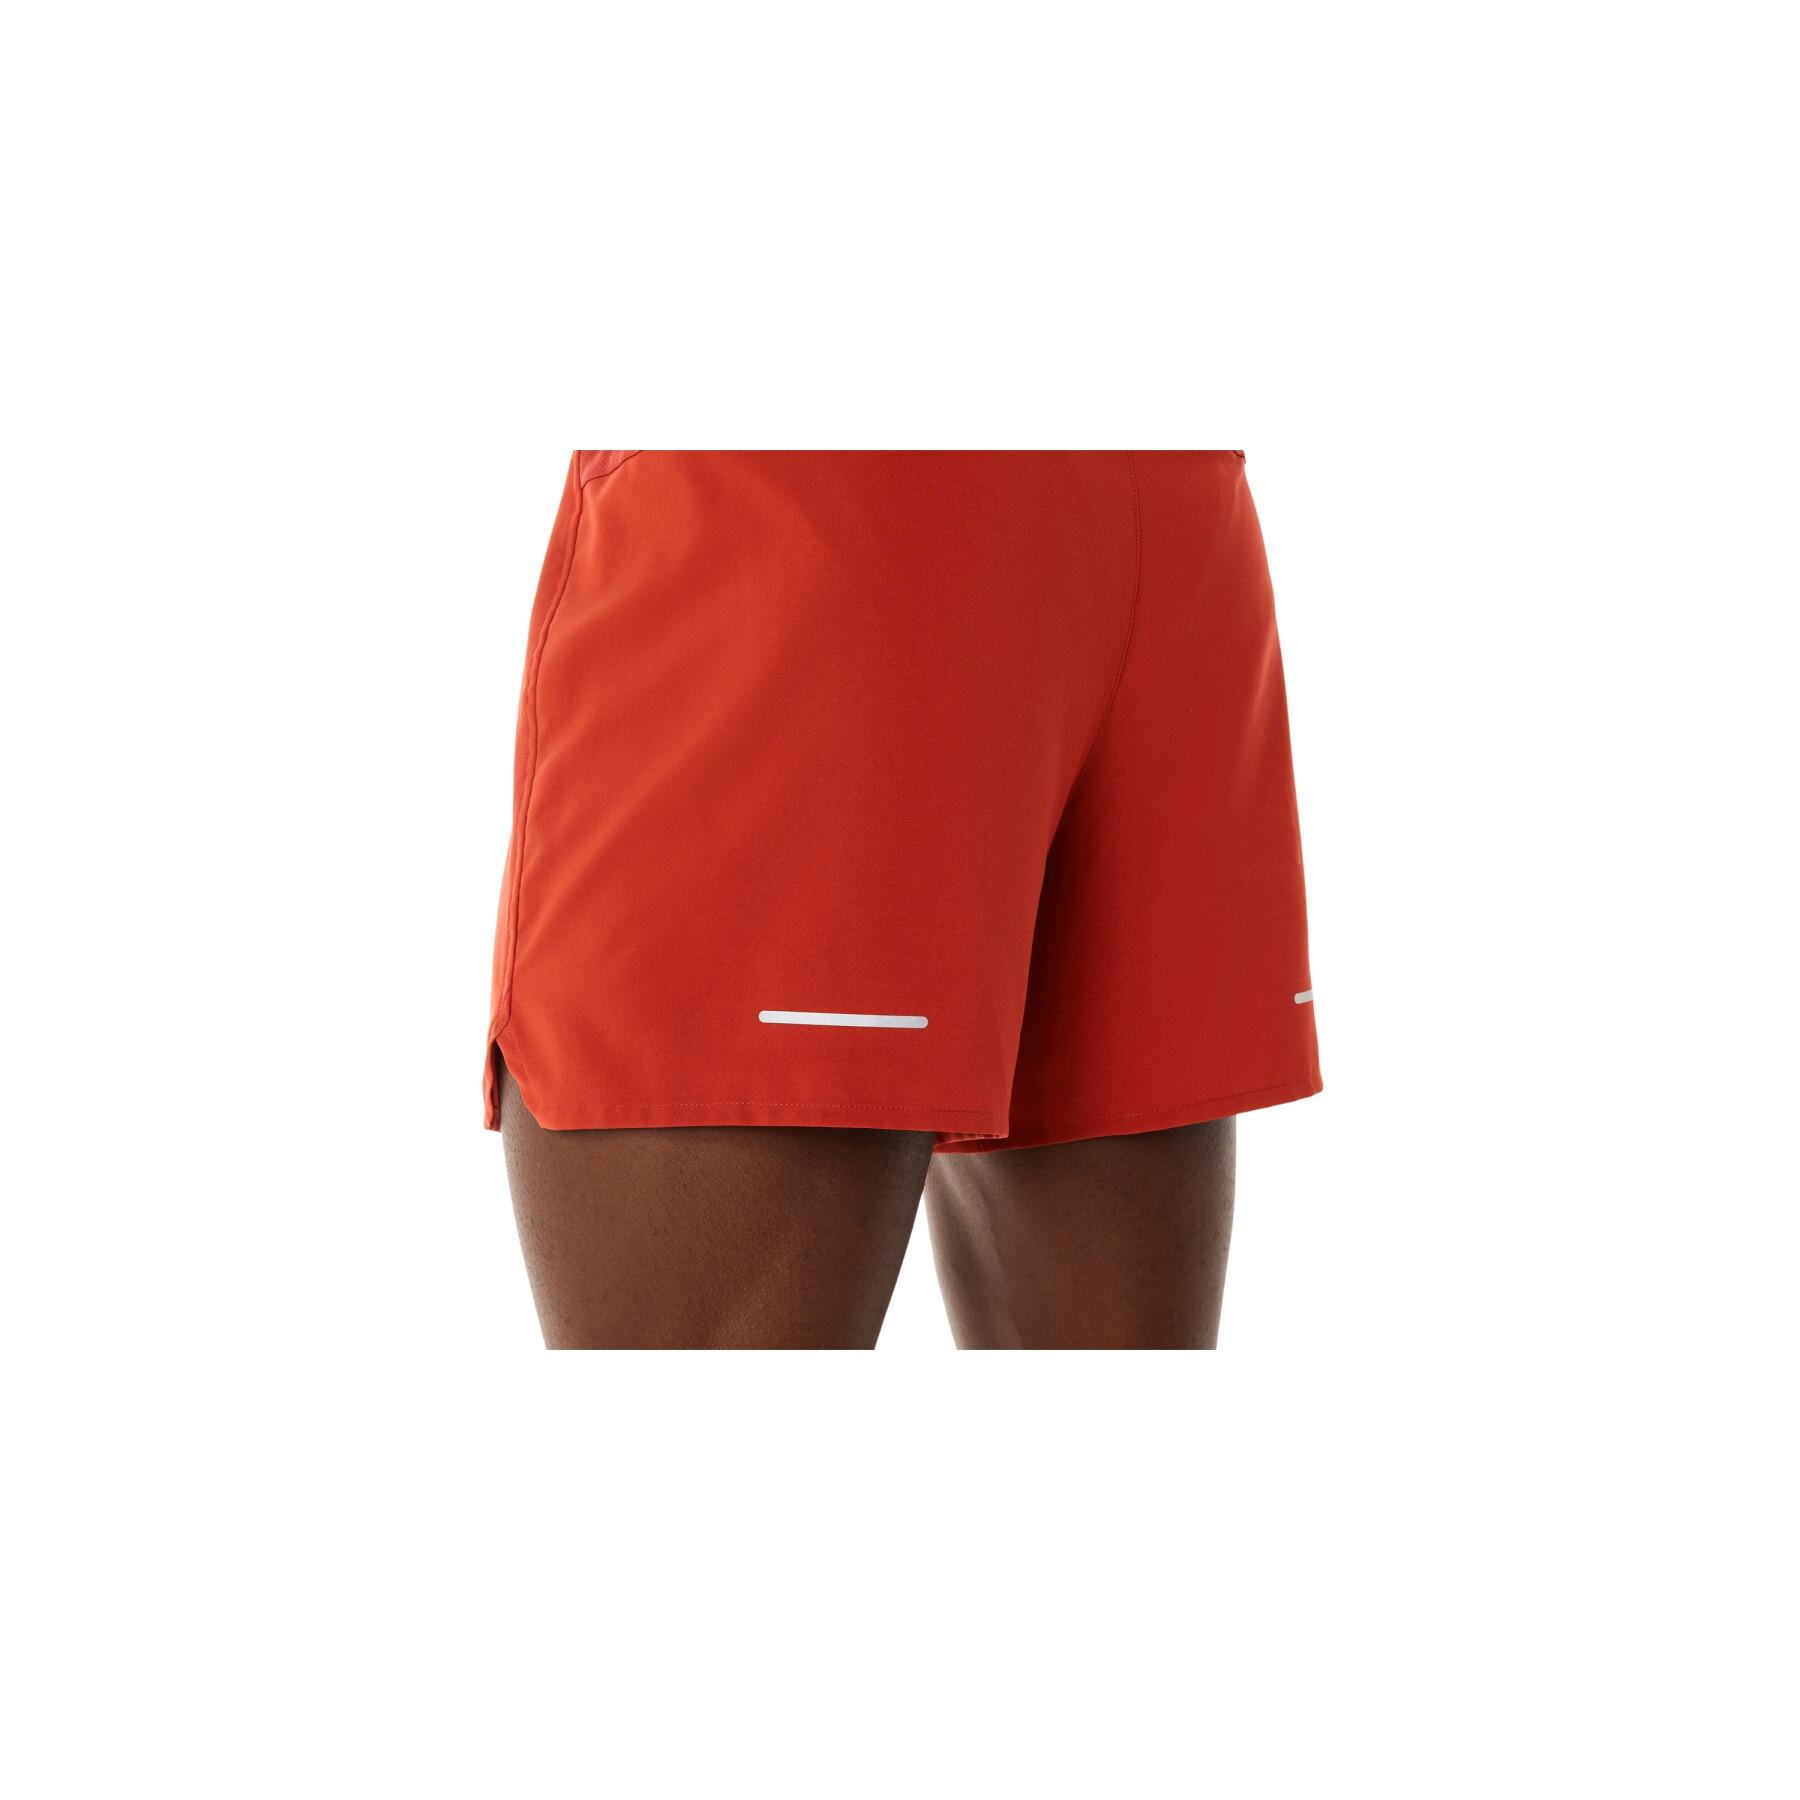 Shorts from running Asics